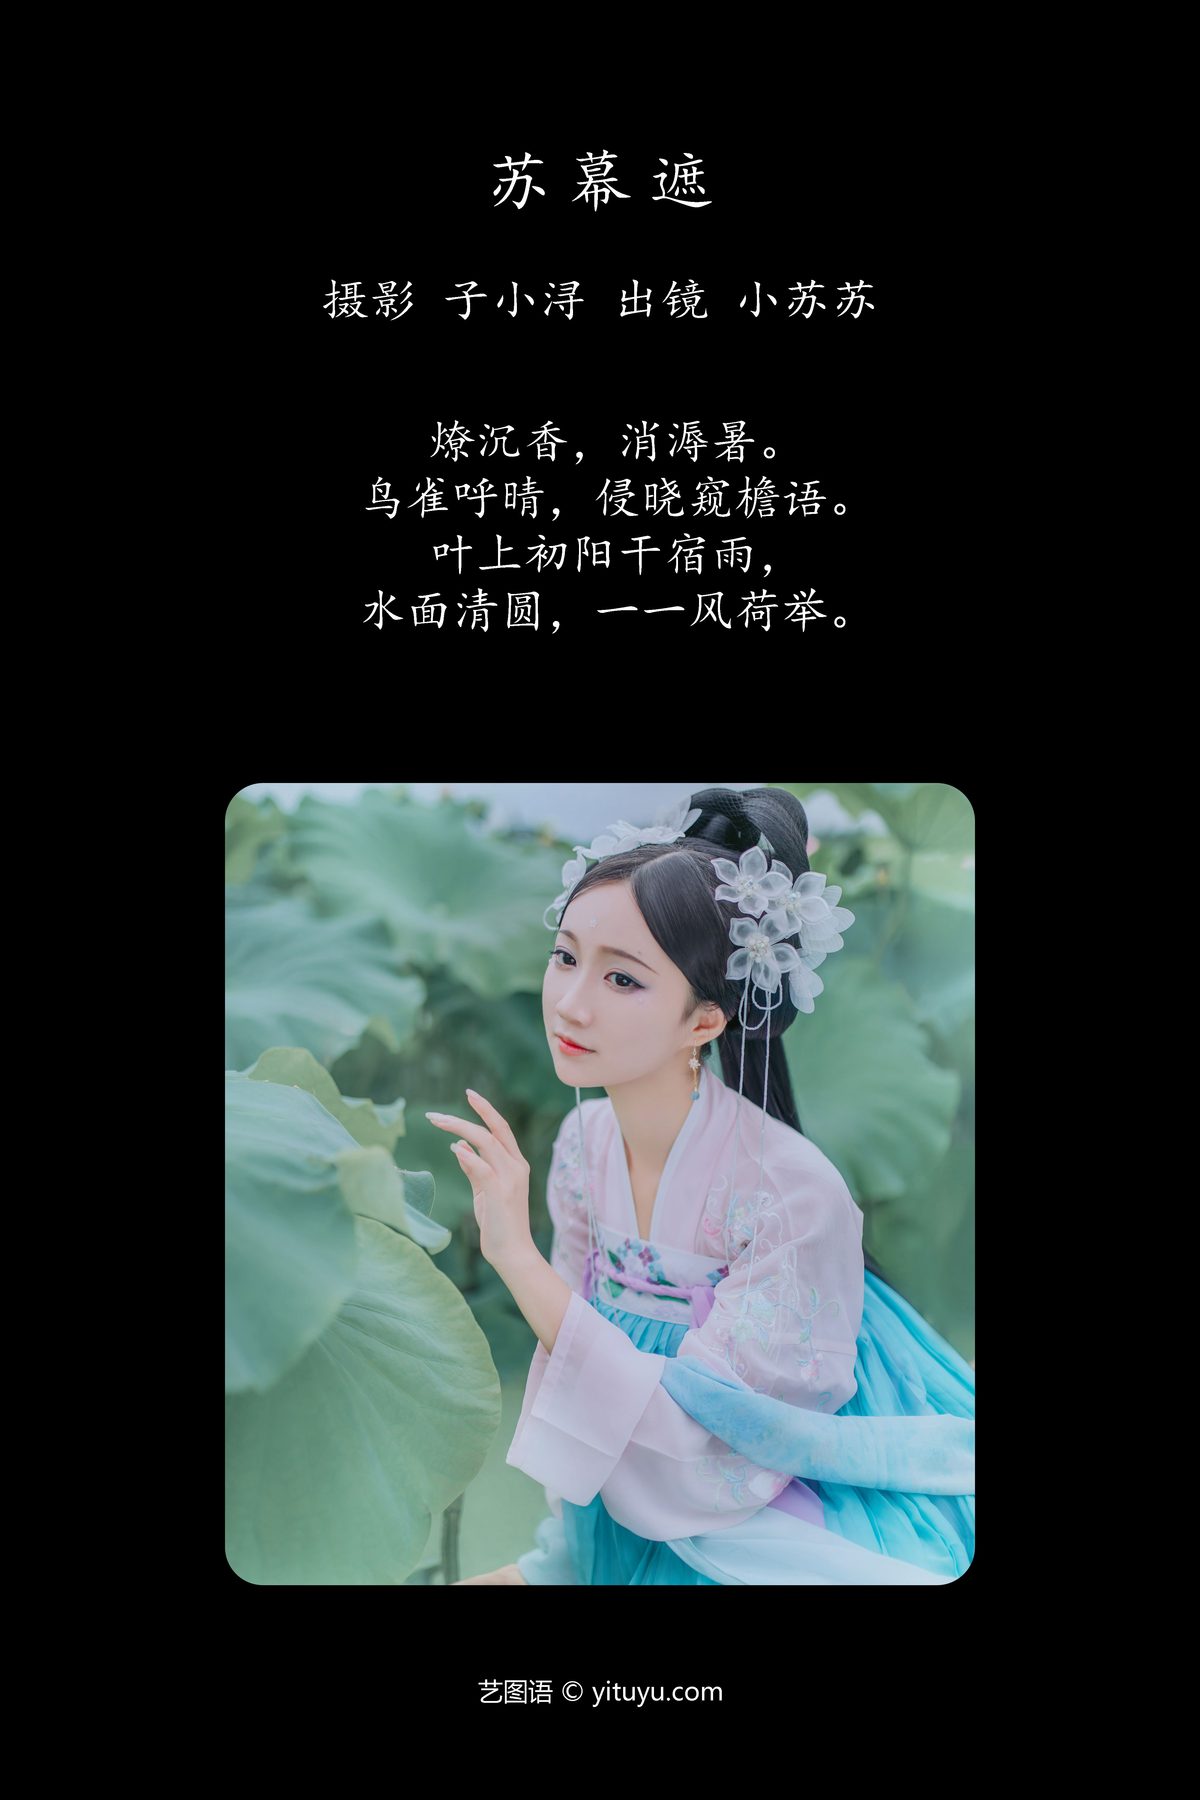 YiTuYu艺图语 Vol 4165 Qi Luo Sheng De Xiao Su Su 0002 3577106978.jpg